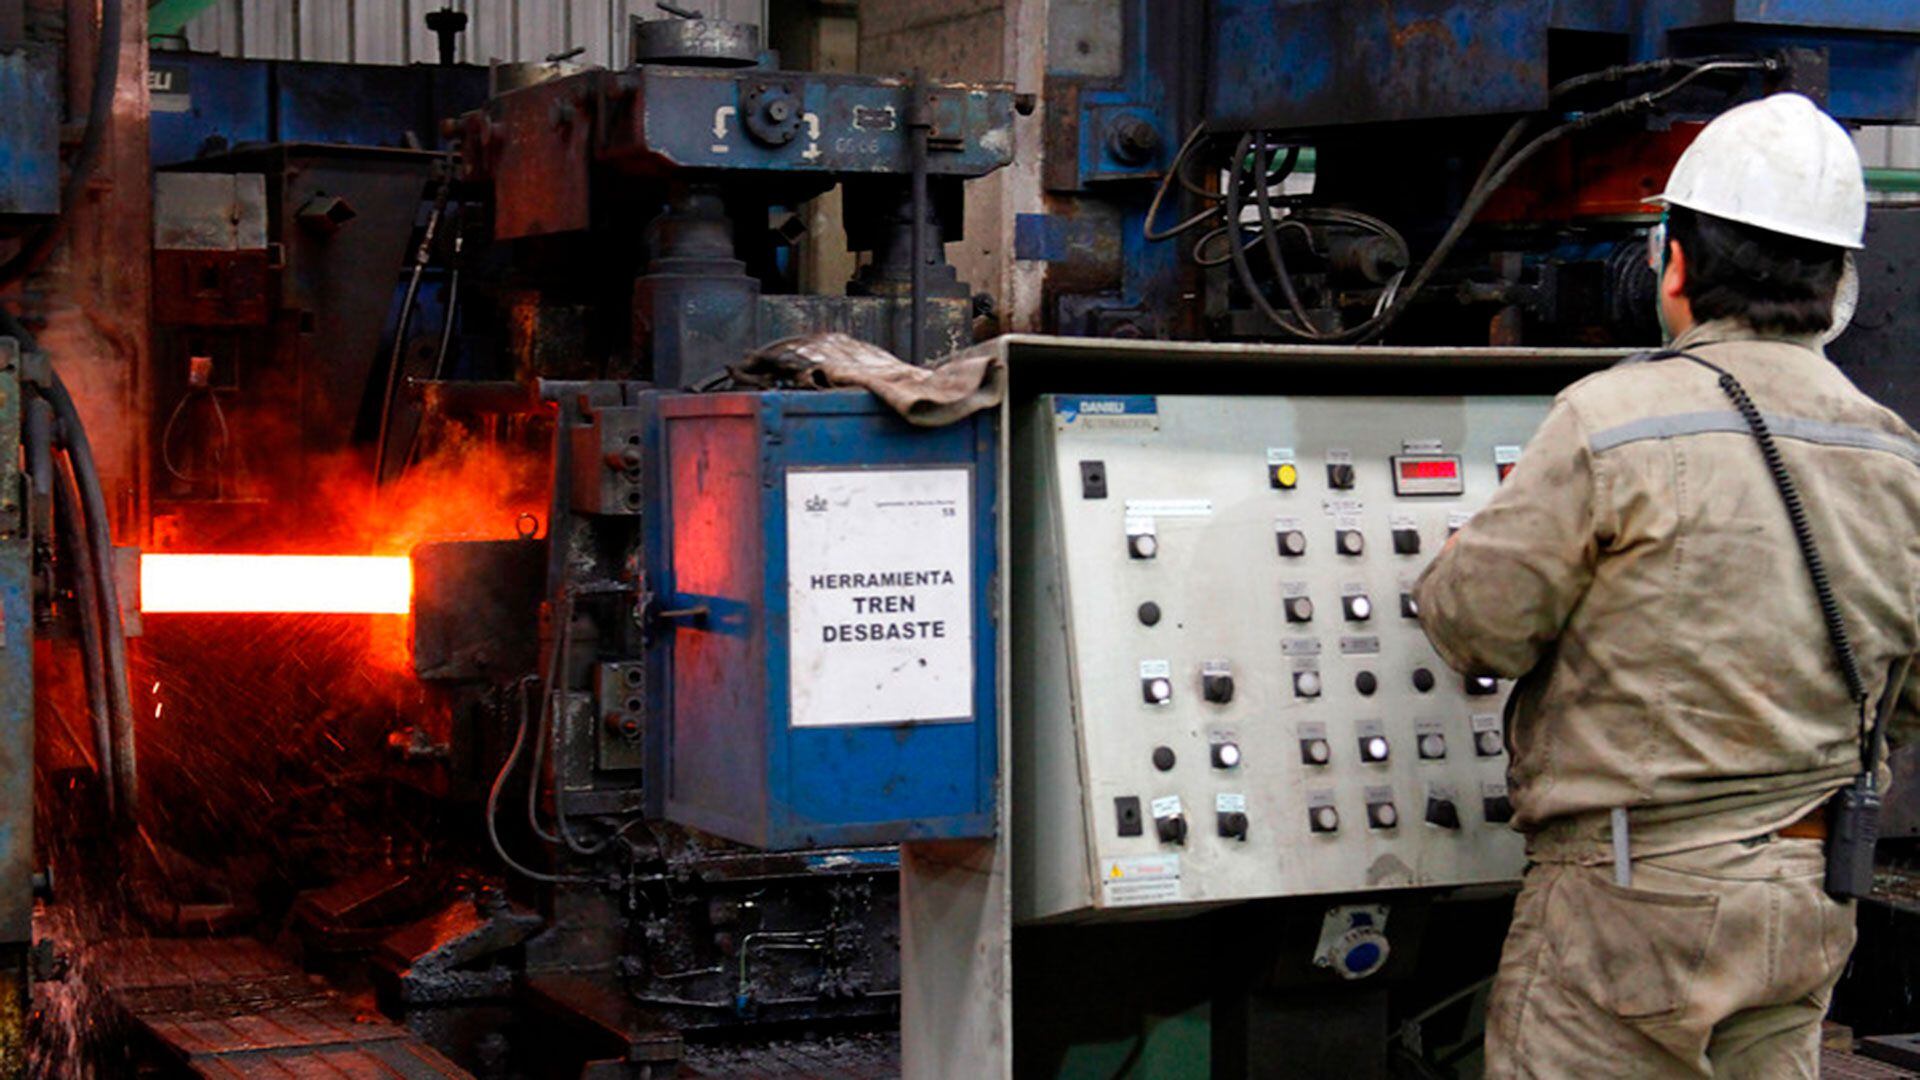 La siderúrgica Huachipato, principal productor de acero chilena, suspendió sus faenas agobiada por la competencia china.